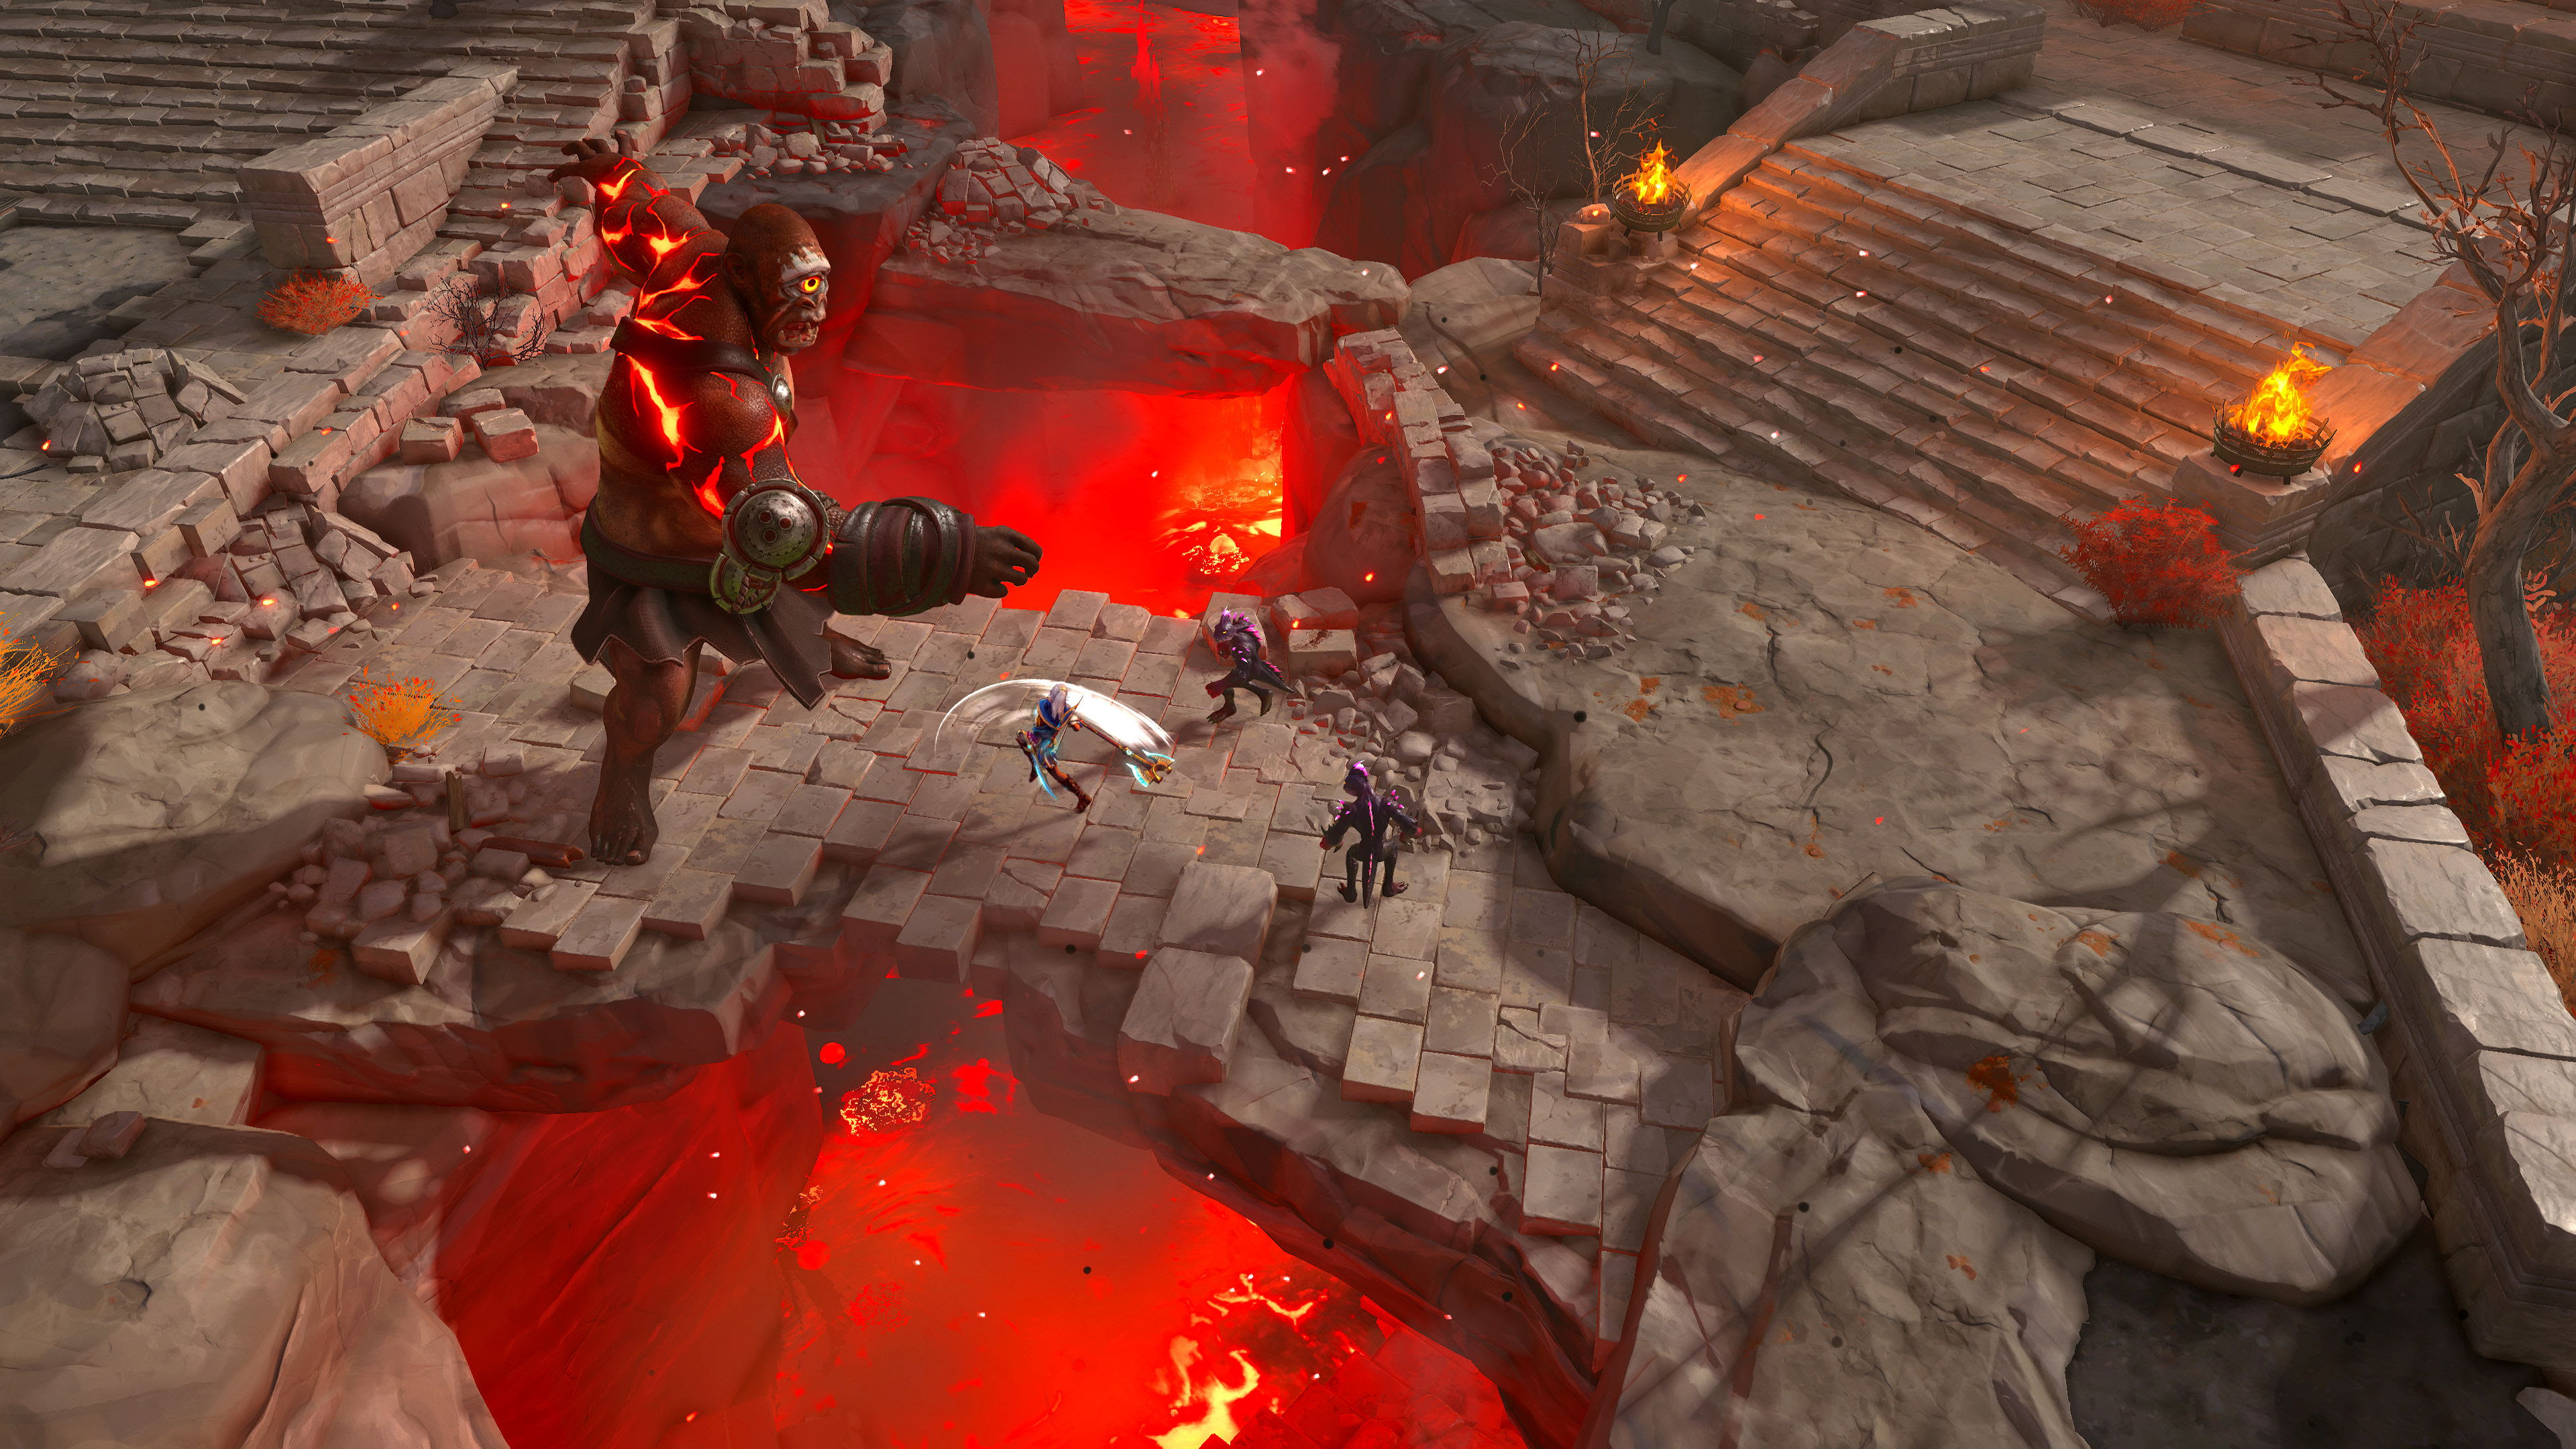 Ein weiterer Neuer Held, Ash sowie Top-Down-Gameplay erhalten mit "Die verlorenen Götter" Einzug in Immortals Fenyx Rising.